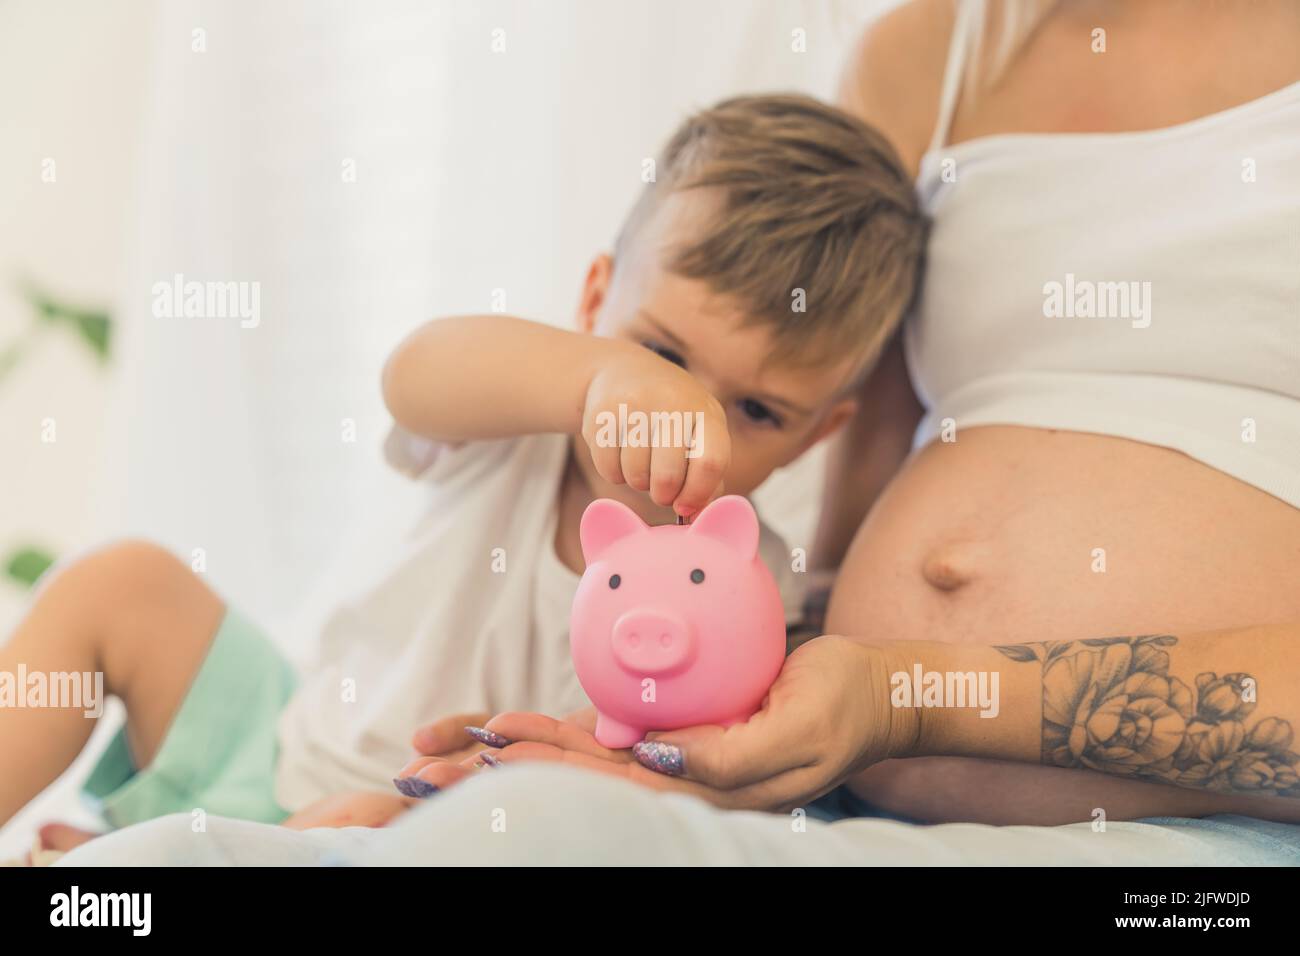 Pequeño lindo muchacho caucásico poniendo dinero en la rivera de cerdos con su madre embarazada. Fotografía de alta calidad Foto de stock